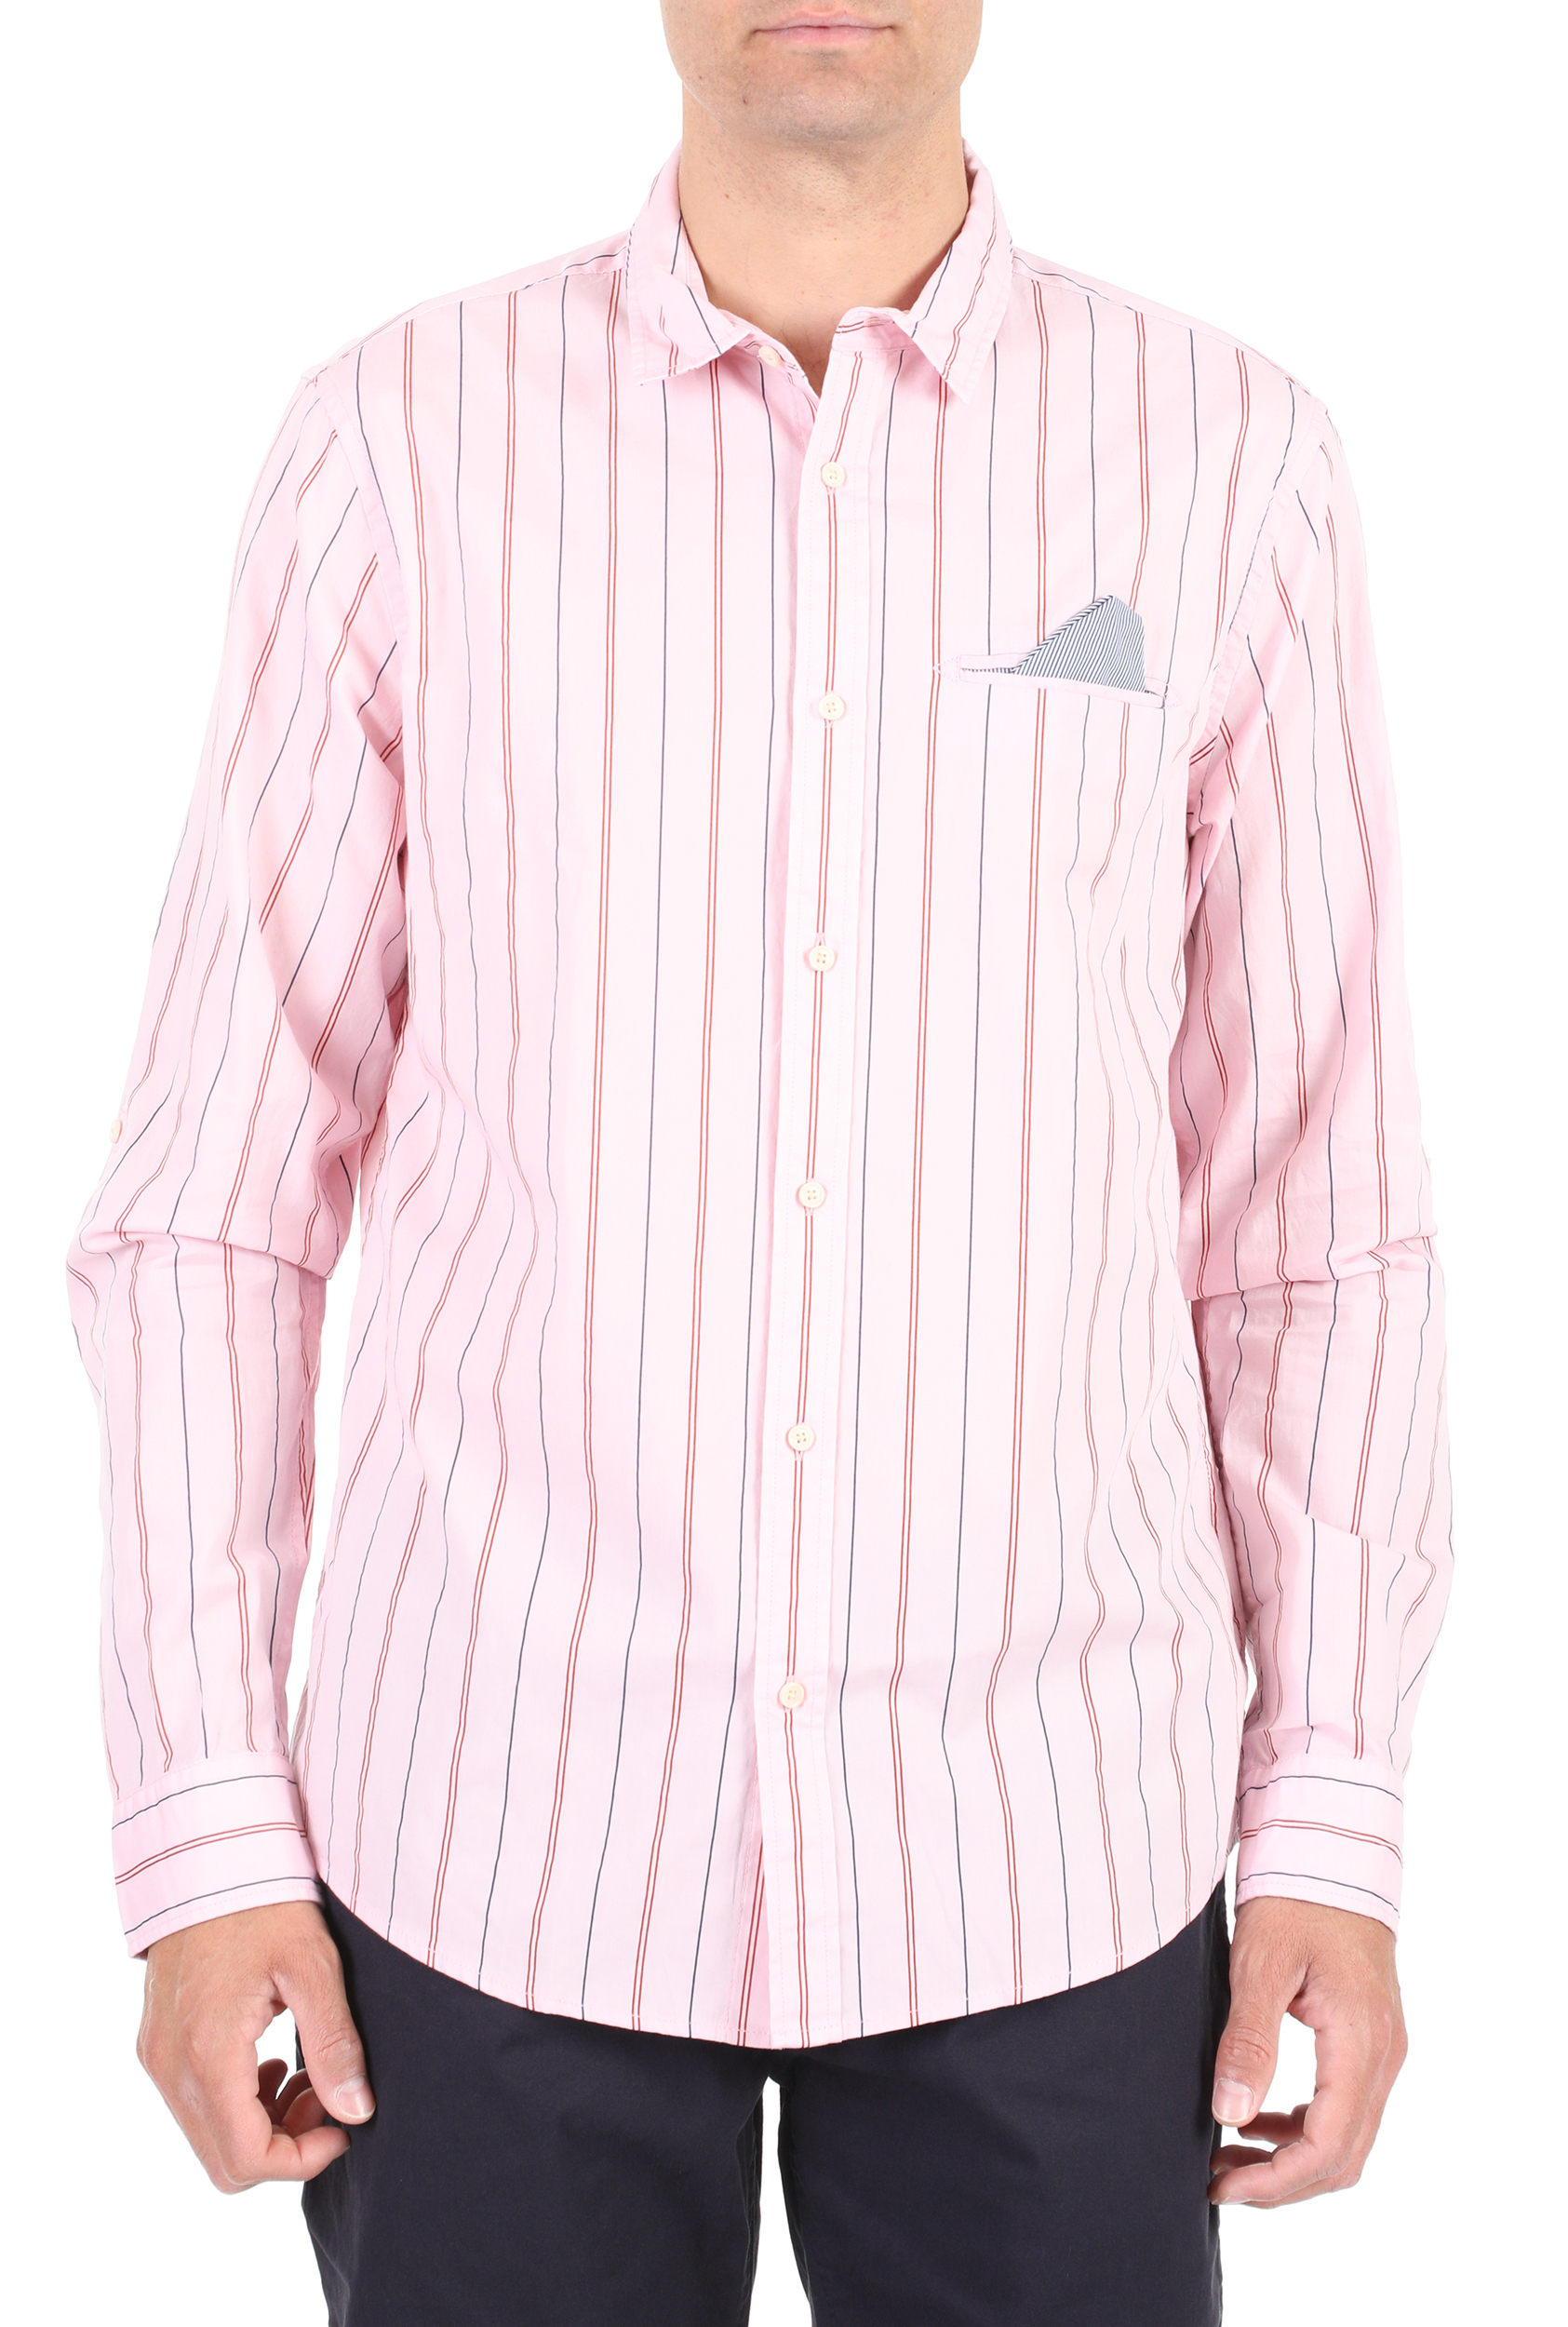 Ανδρικά/Ρούχα/Πουκάμισα/Μακρυμάνικα SCOTCH & SODA - Ανδρικό πουκάμισο SCOTCH & SODA ροζ